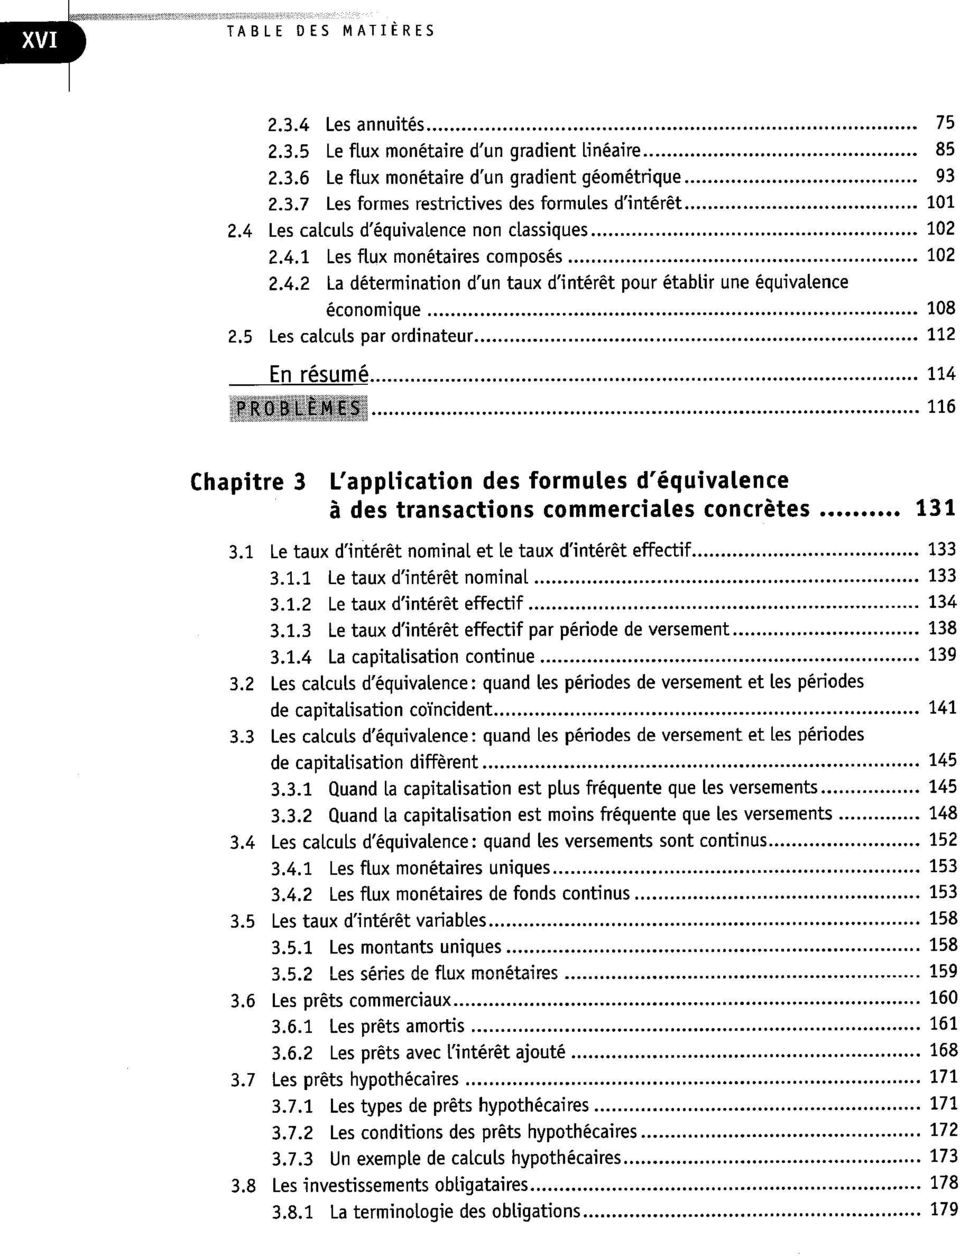 5 Les calculs par ordinateur 112 En résumé 114 problèmes; ne Chapitre 3 L'application des formules d'équivalence à des transactions commerciales concrètes 131 3.